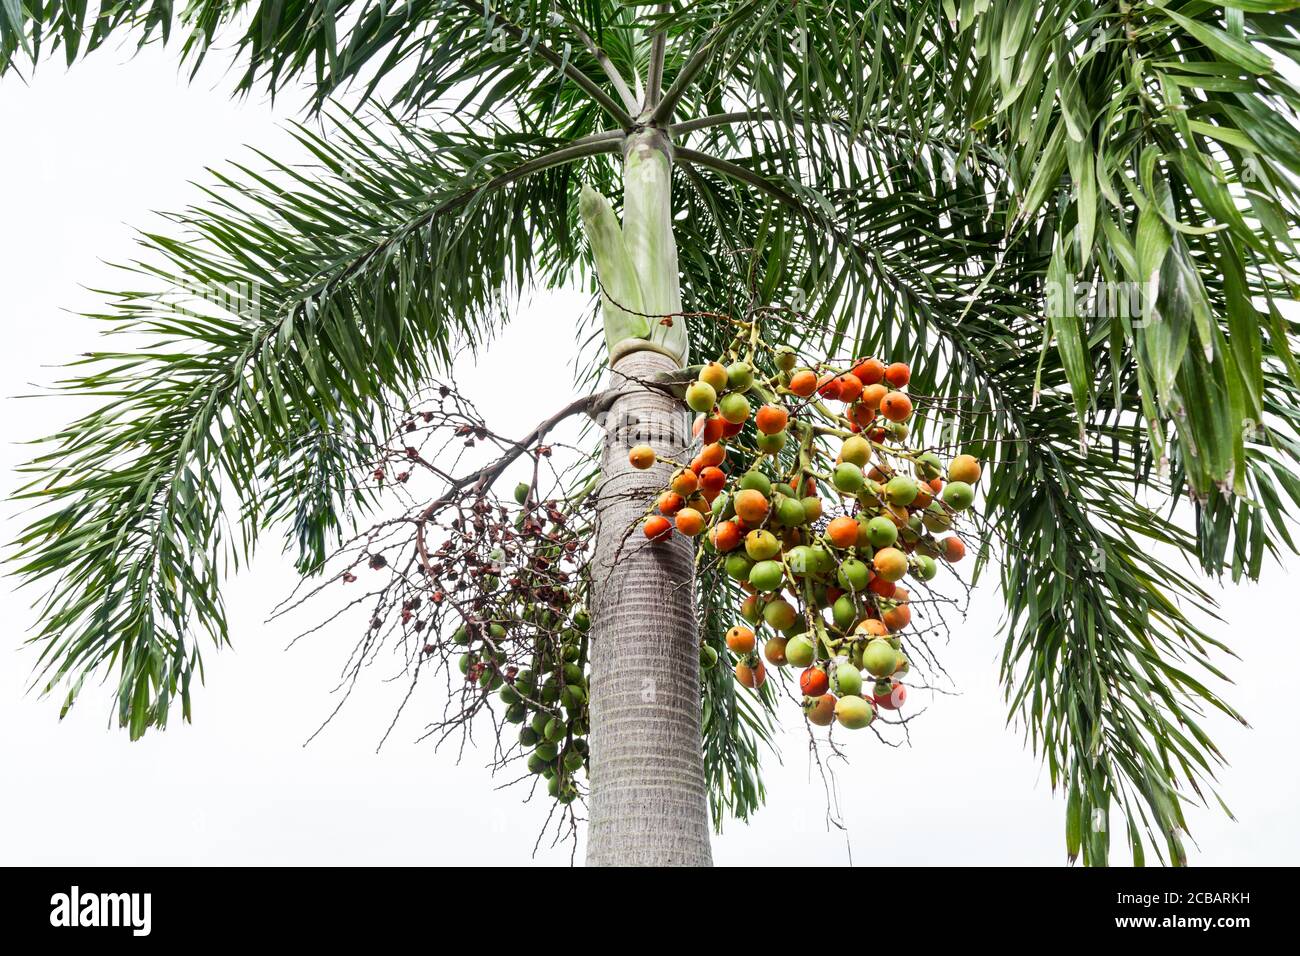 Areca catechu (Areca Nut Palm, noix de bétel) ; montrant les fruits et légumes sur les arbres hauts. Les fruits mûrs, ronds, orange. Tous les groupes en grand groupe, suspendu dow Banque D'Images